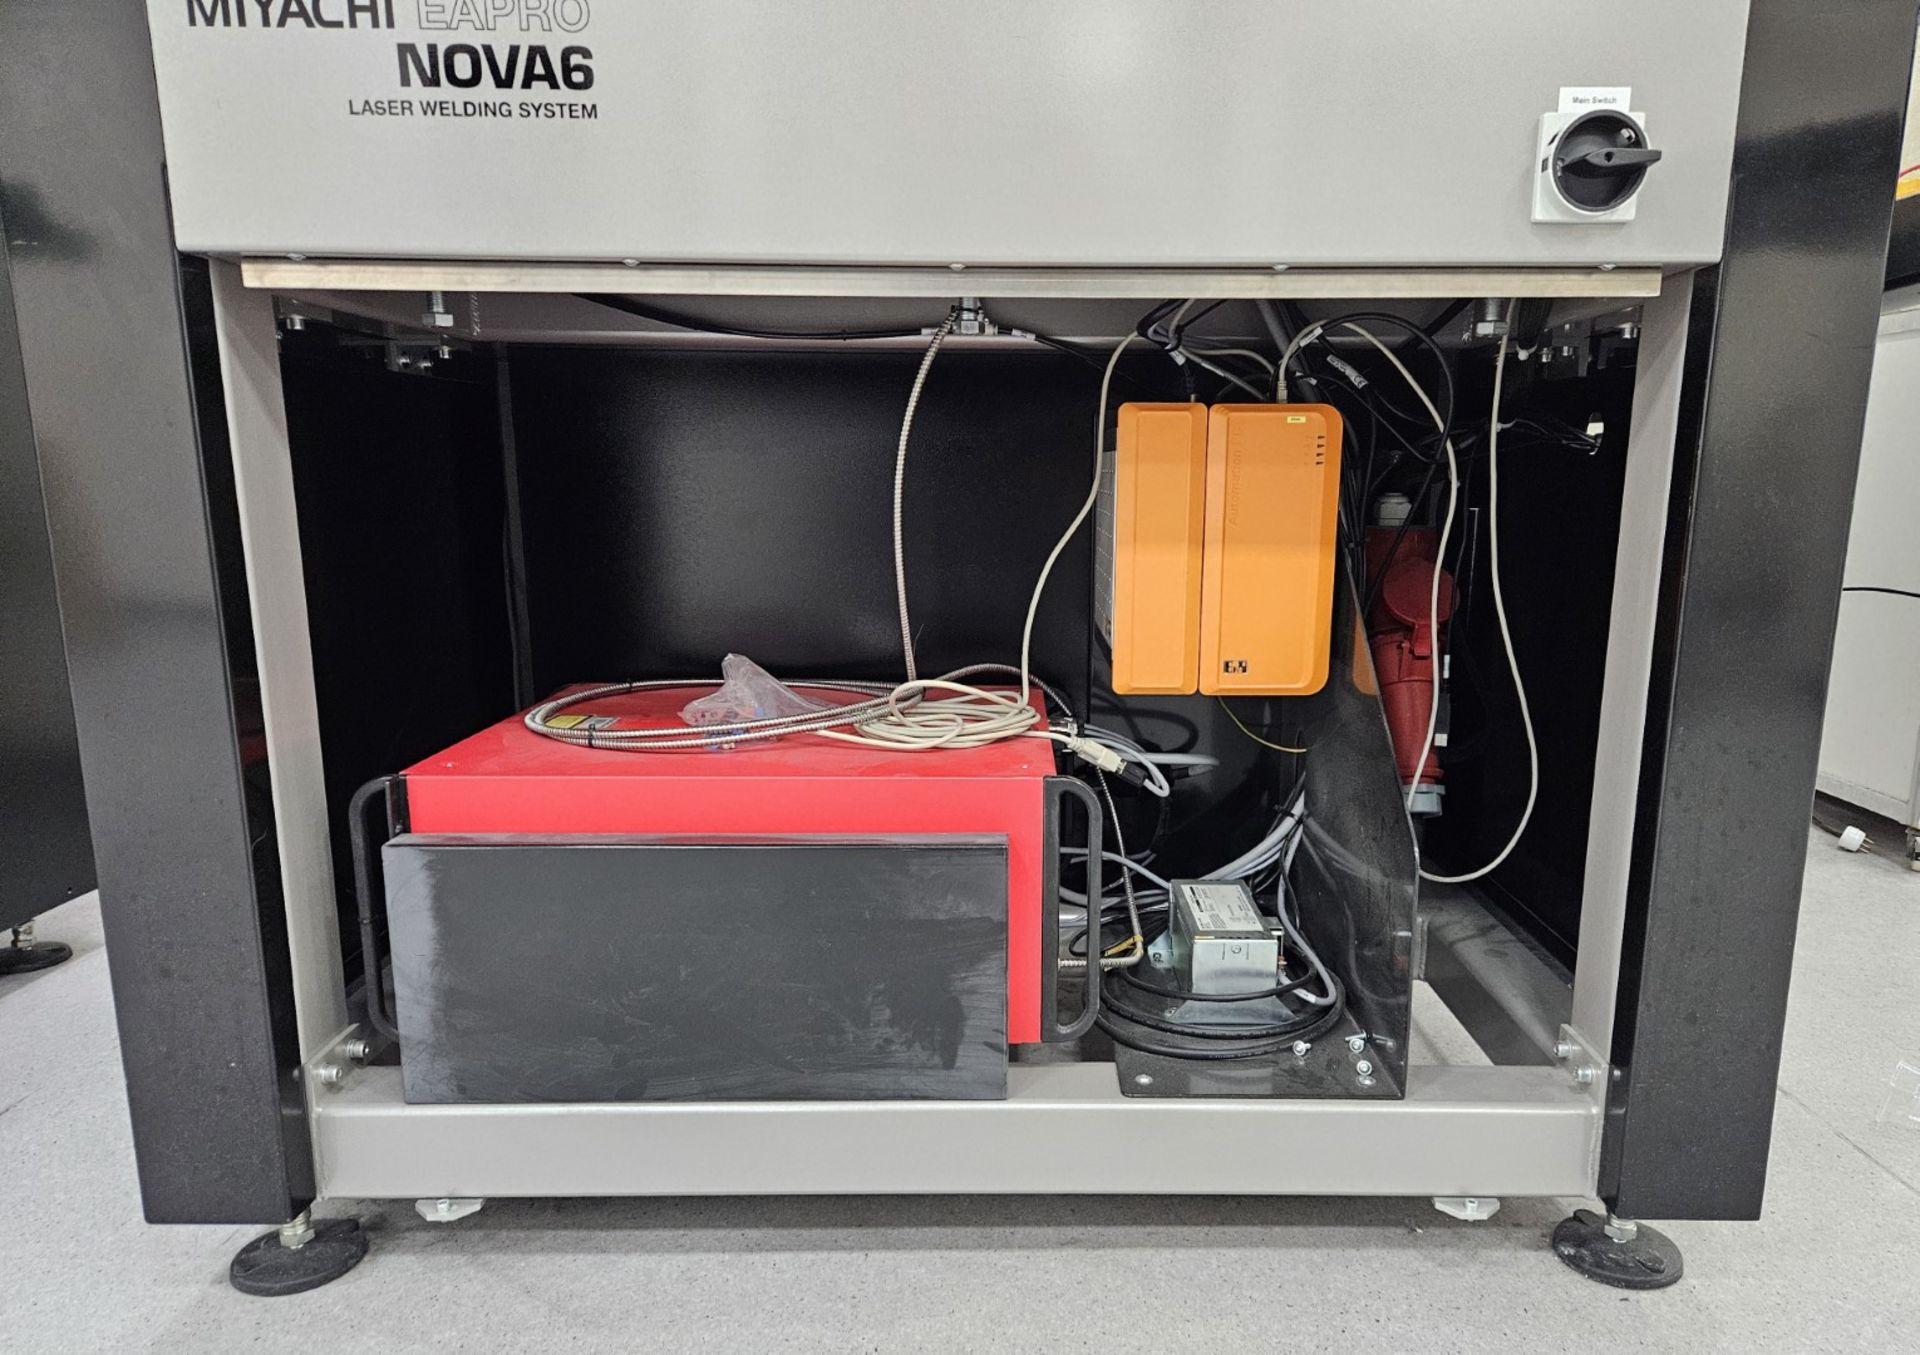 1 x Amada Miyachi Nova 6 Laser CNC Welding Workstation System - Type: 68M0106 - Year: 2019 - Image 16 of 17